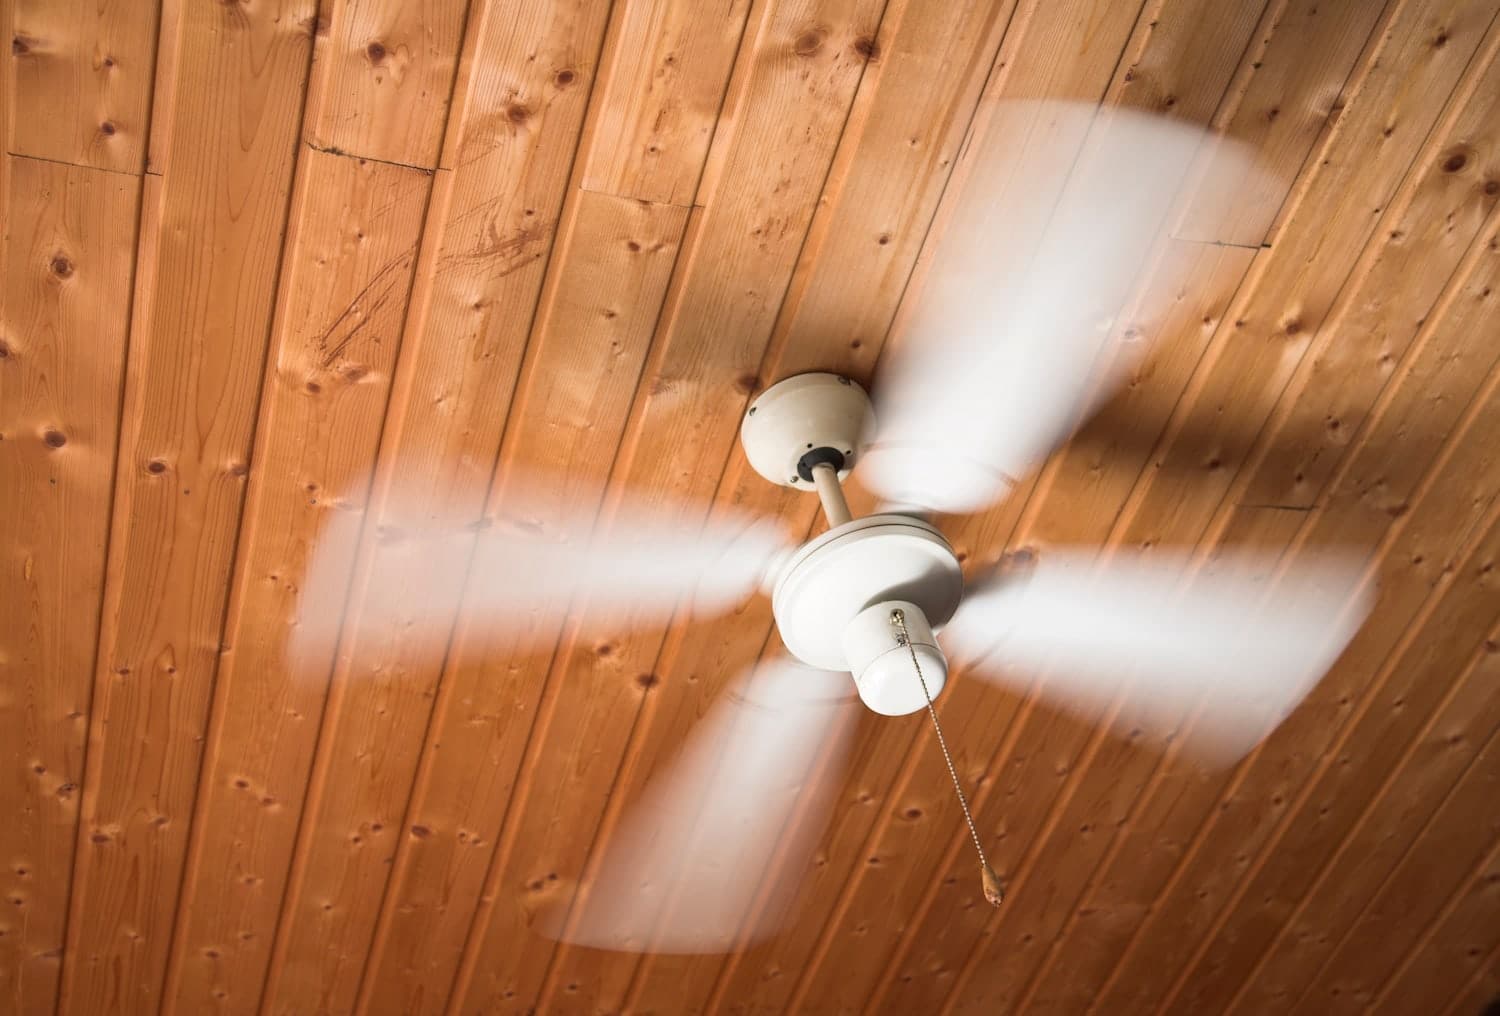 barnwood ceiling fan